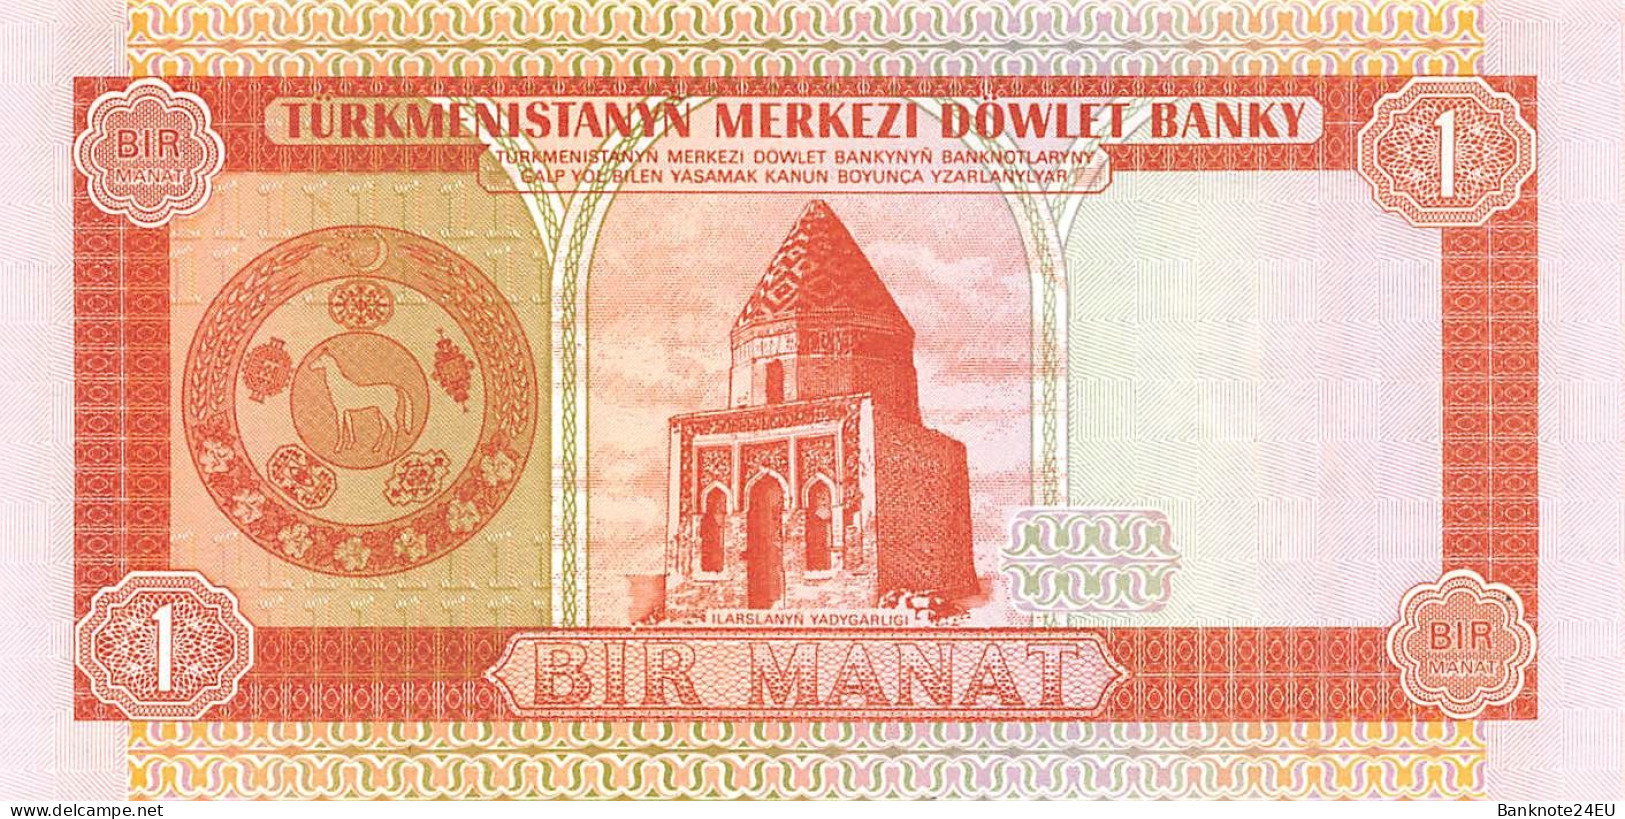 Turkmenistan 1 Manat 1993 Unc Pn 1 - Turkmenistan